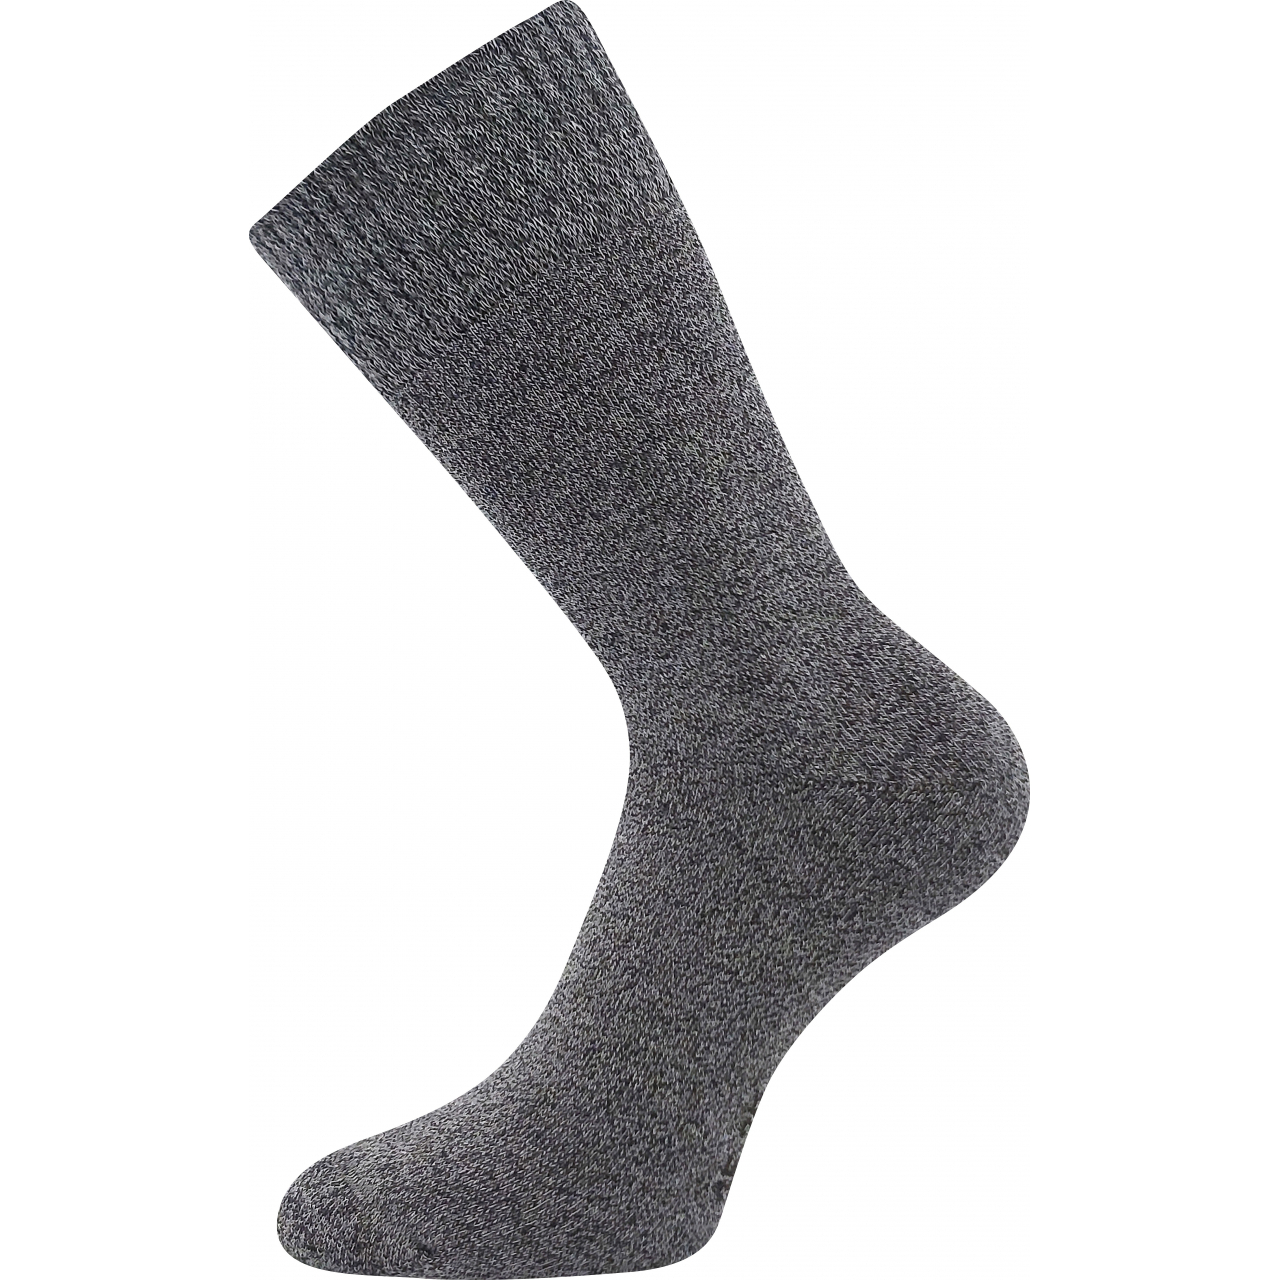 Ponožky klasické unisex Voxx Wolis - tmavě šedé, 43-46